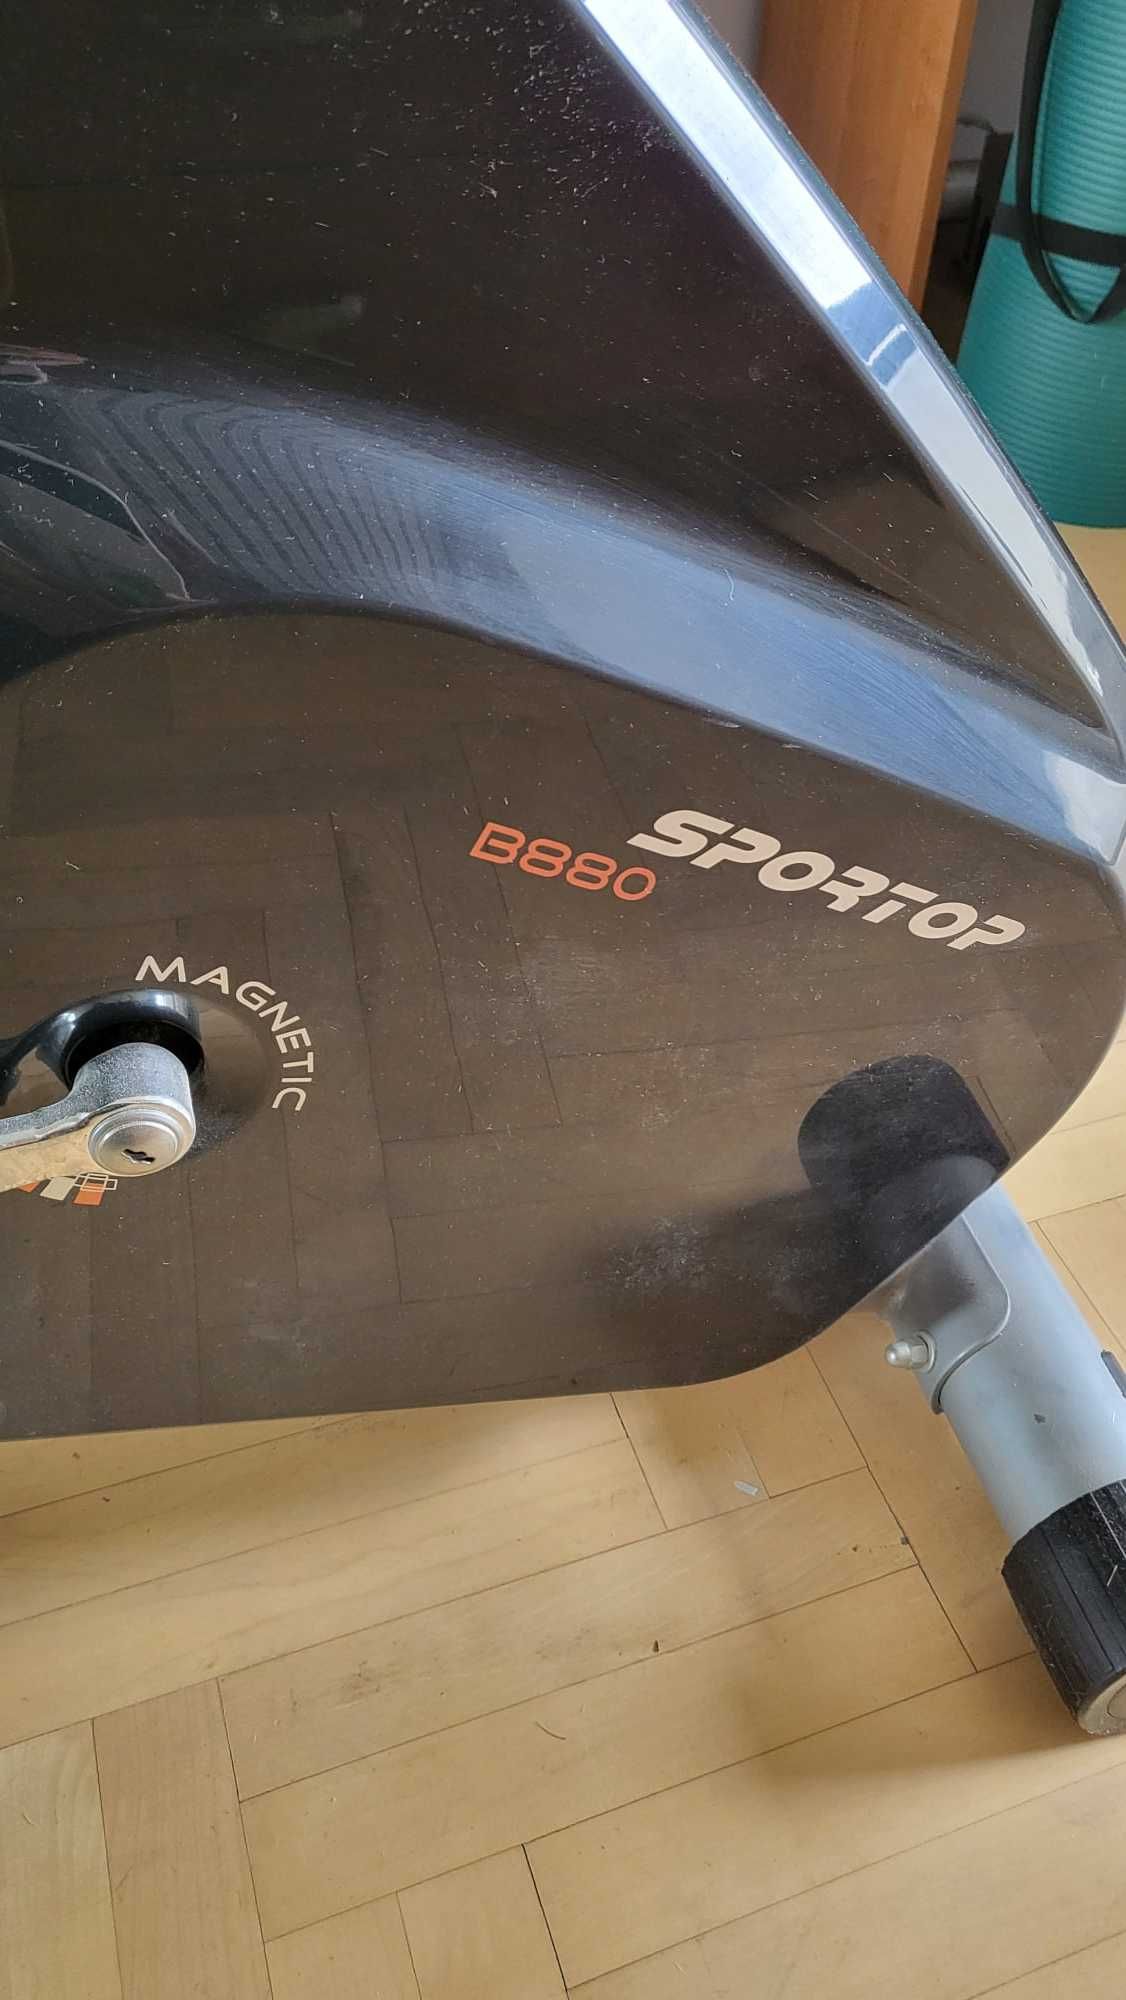 Sprzedam rower treningowy magnetyczny B880 Sportop